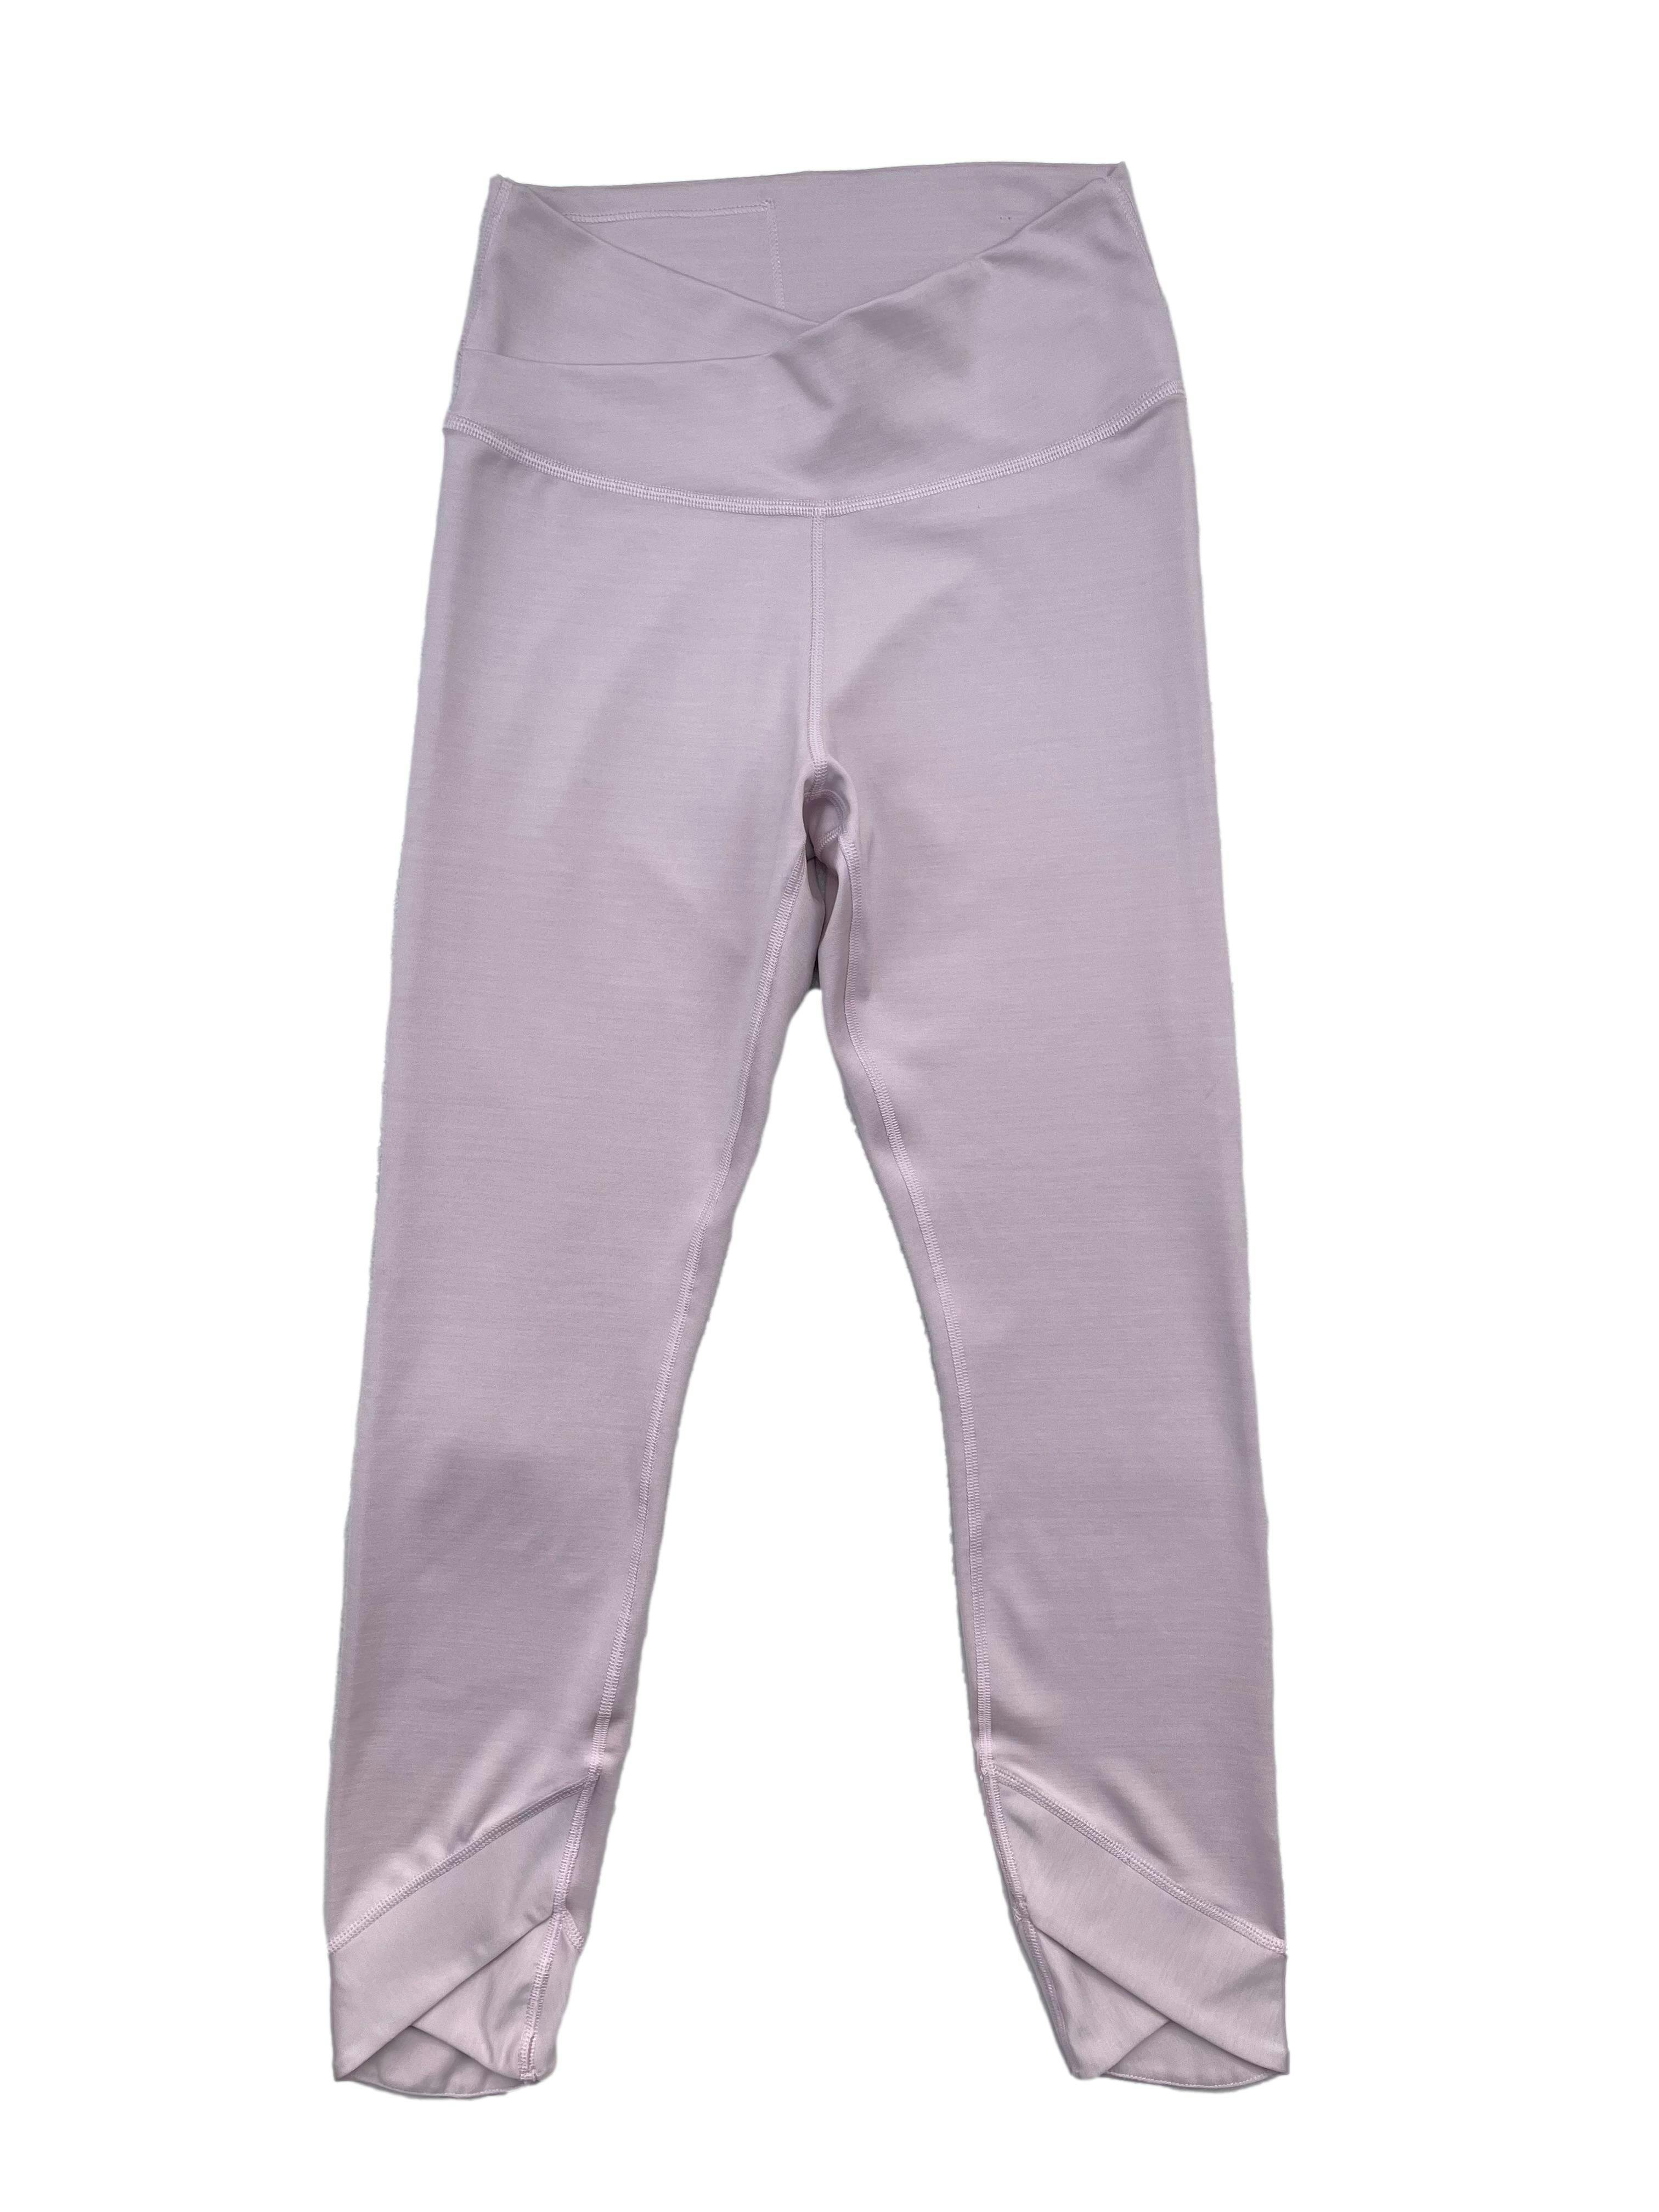 Leggings palo rosa Nike, pretina y tobillos con cruce en V, bolsillo interno, teconología Dri-Fit que absorve el sudor. Cintura 60cm sin estirar, Largo 85cm.